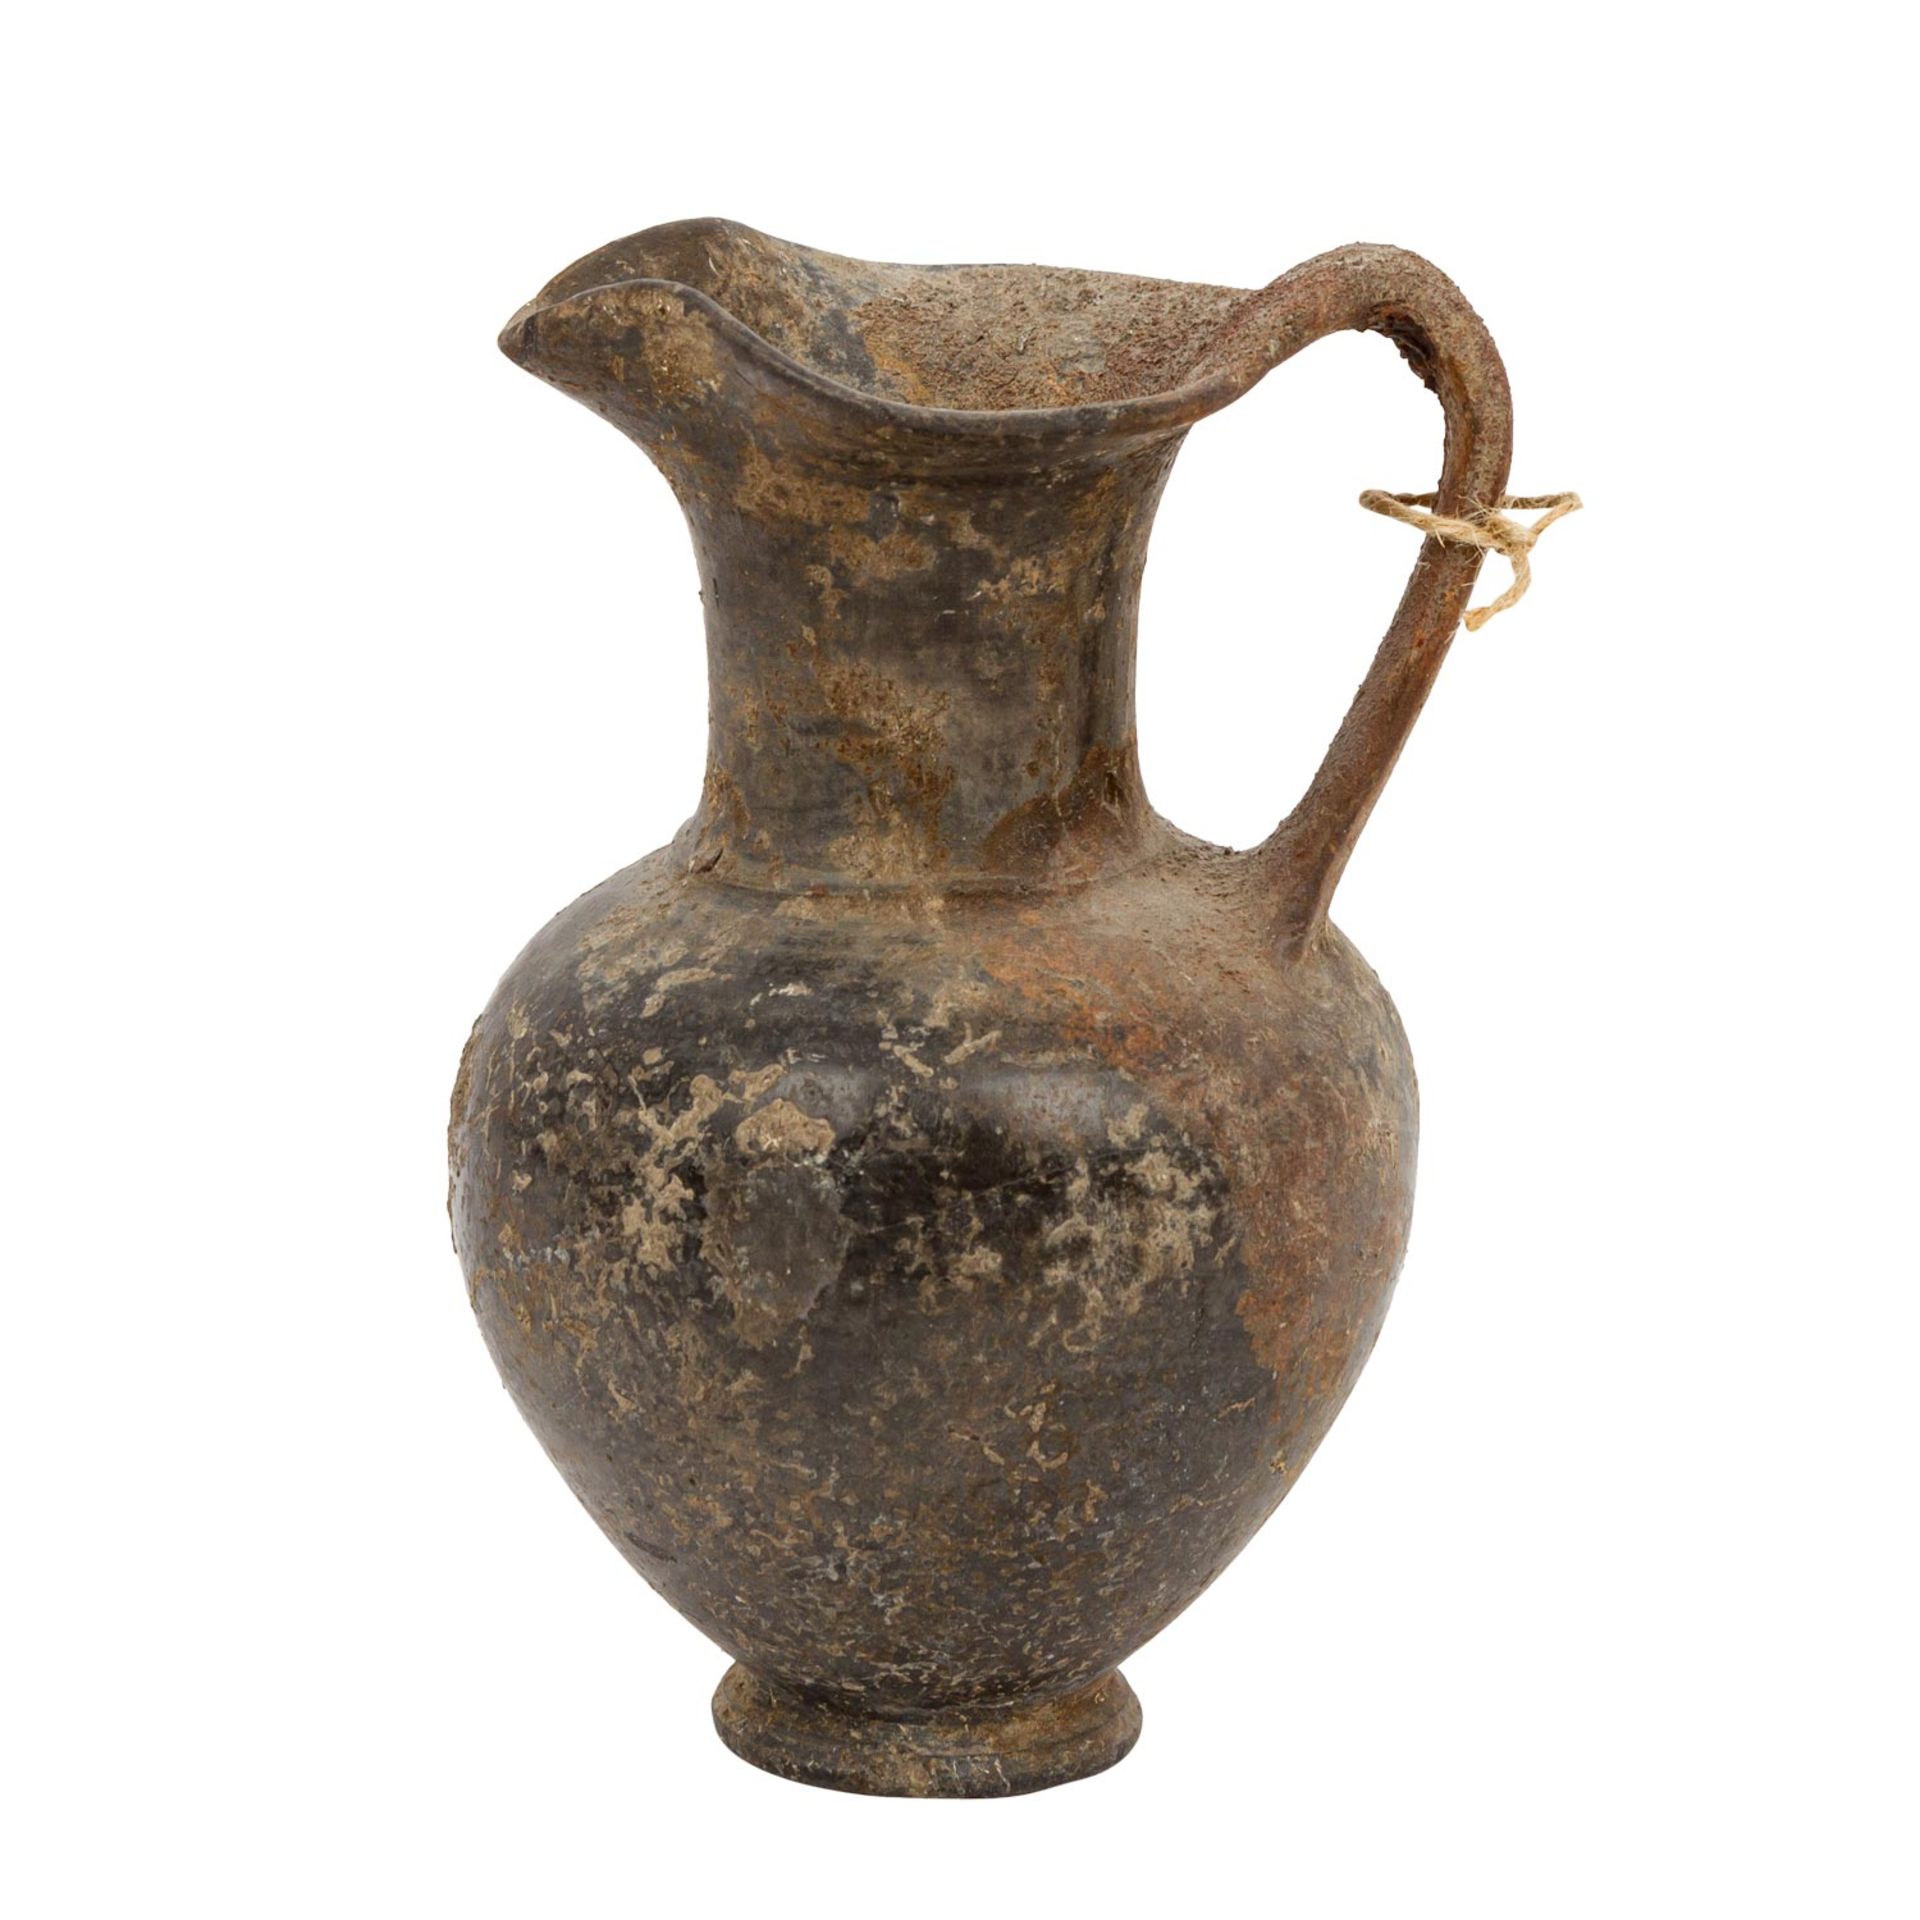 Antike Keramik aus Etrurien - einhenklige Kanne aus Buccherokeramik mit kleeblattförm